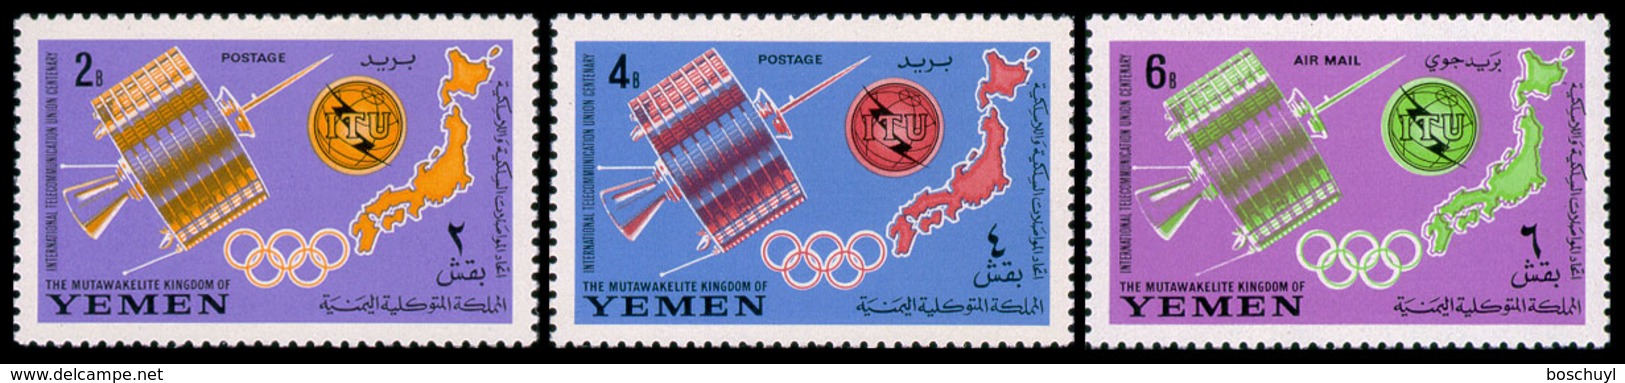 Yemen Kingdom, 1965, ITU Centenary, International Telecommunication Union, United Nations, Space, MNH, Michel 145-147A - Jemen